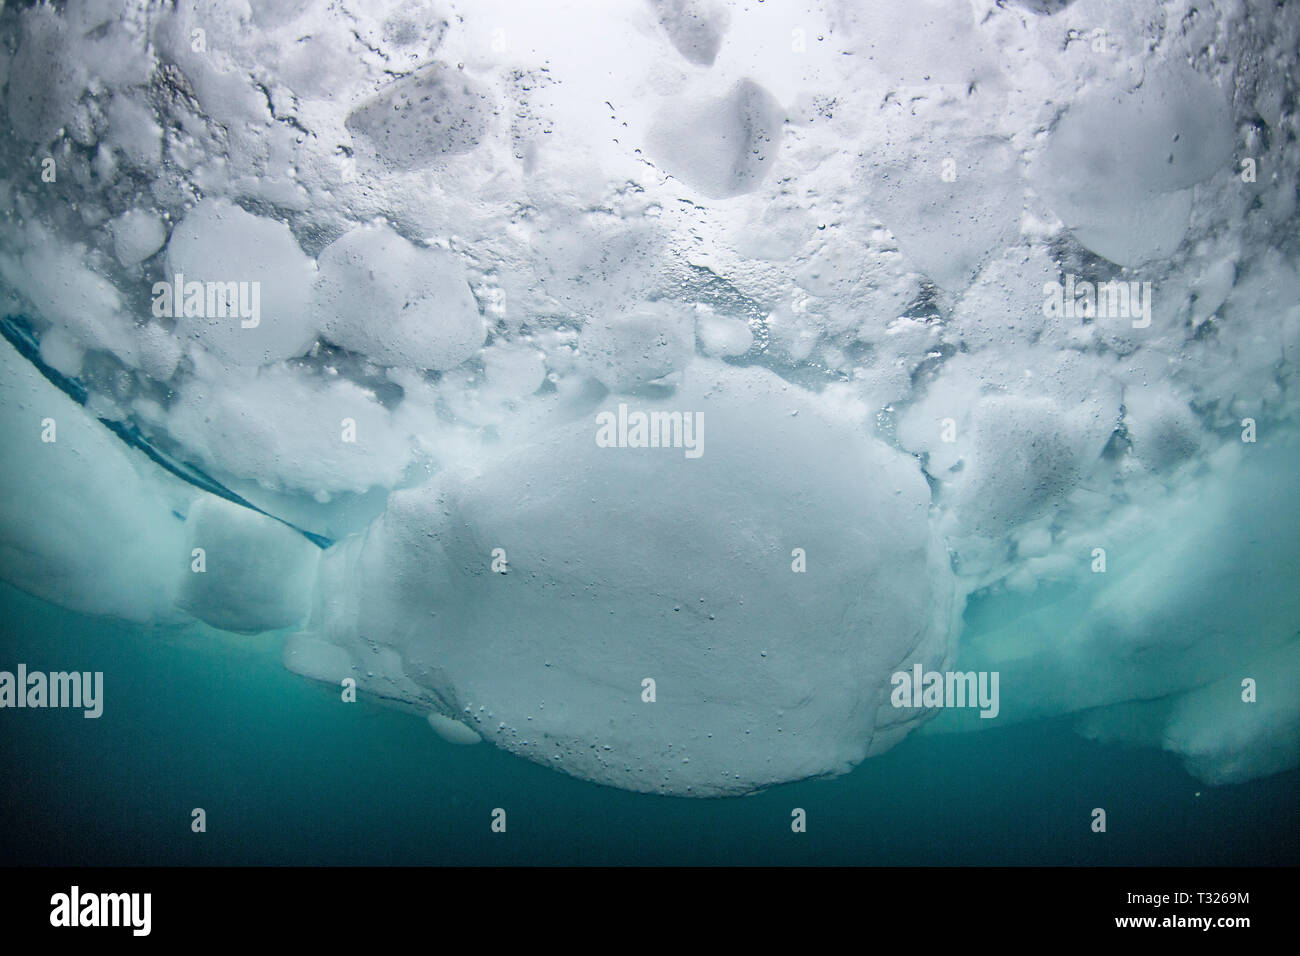 Ice Blocks underwater, Spitsbergen, Arctic Ocean, Norway Stock Photo